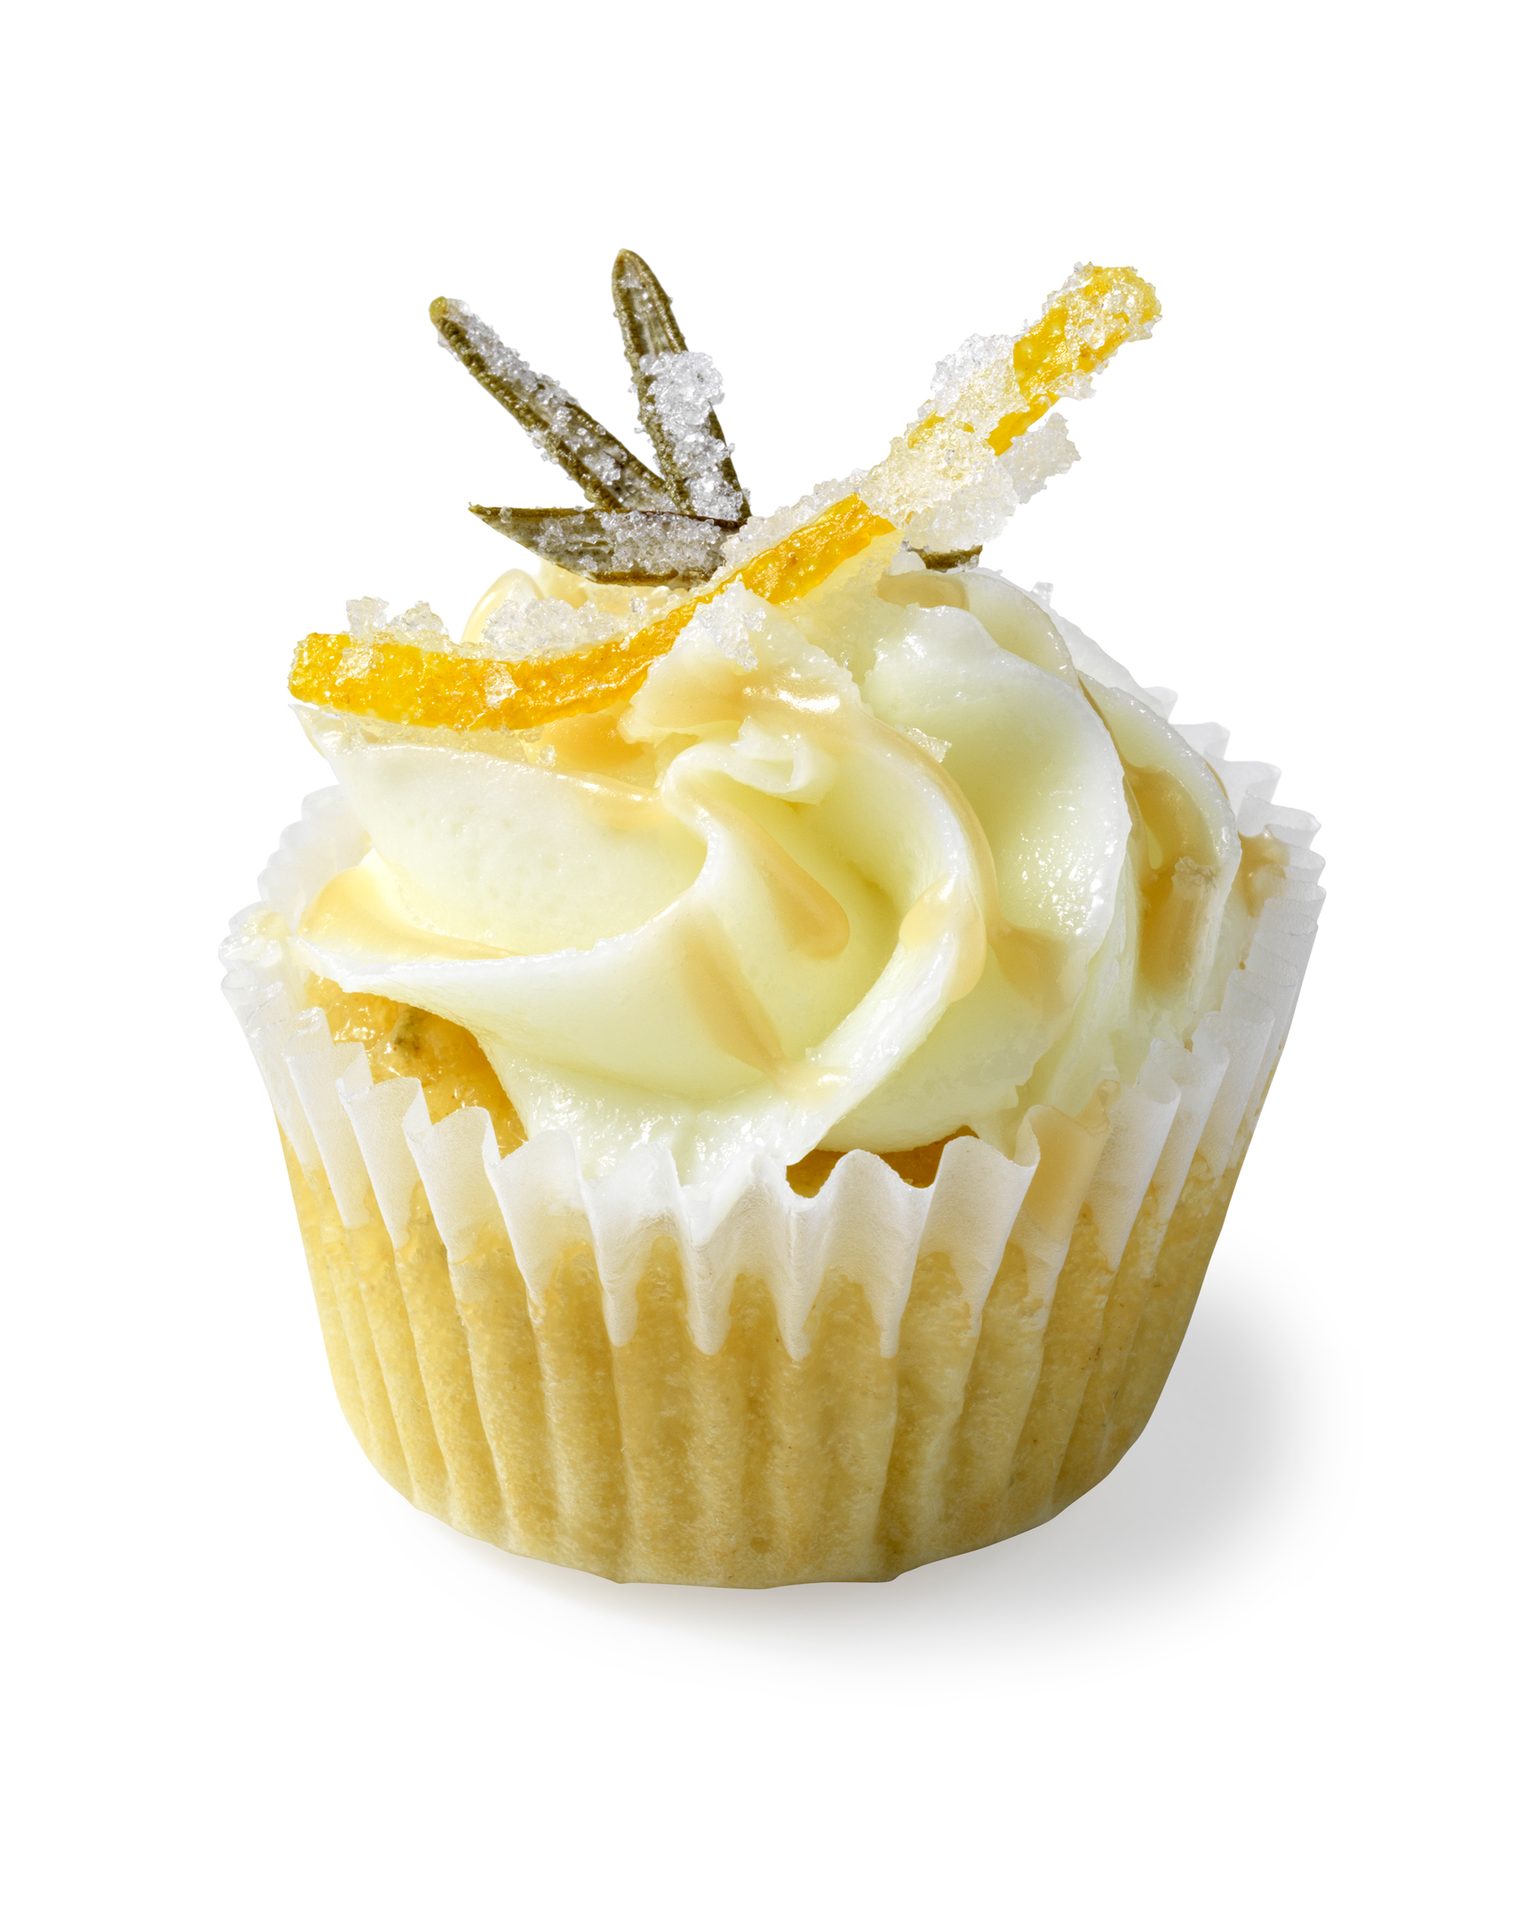 Cupcake, Garnish, White background, Lemon peel